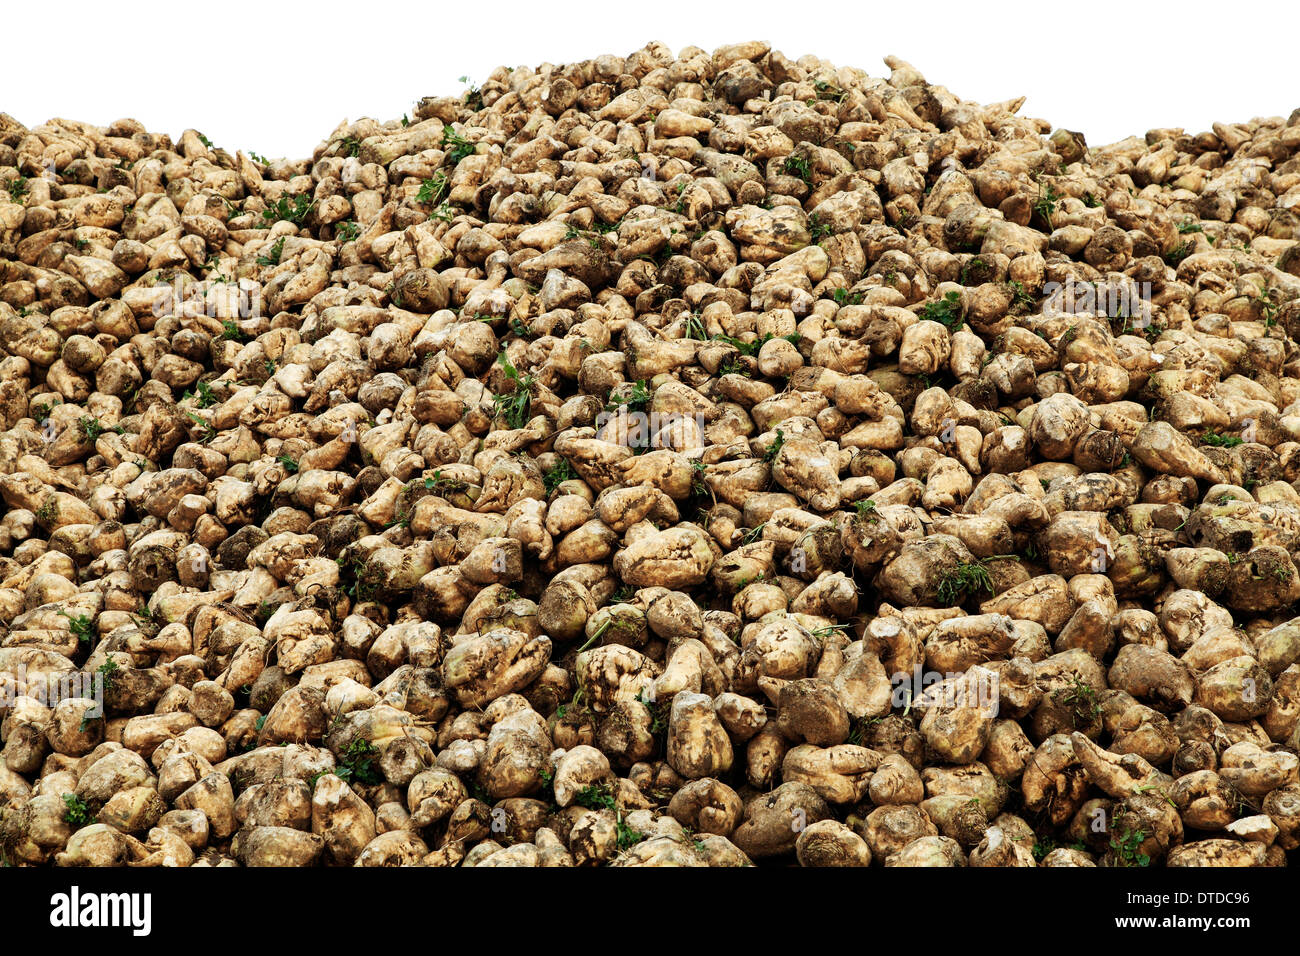 Le sucre de betterave, récoltés, Norfolk, Angleterre Royaume-uni récolte de betteraves à l'agriculture Banque D'Images